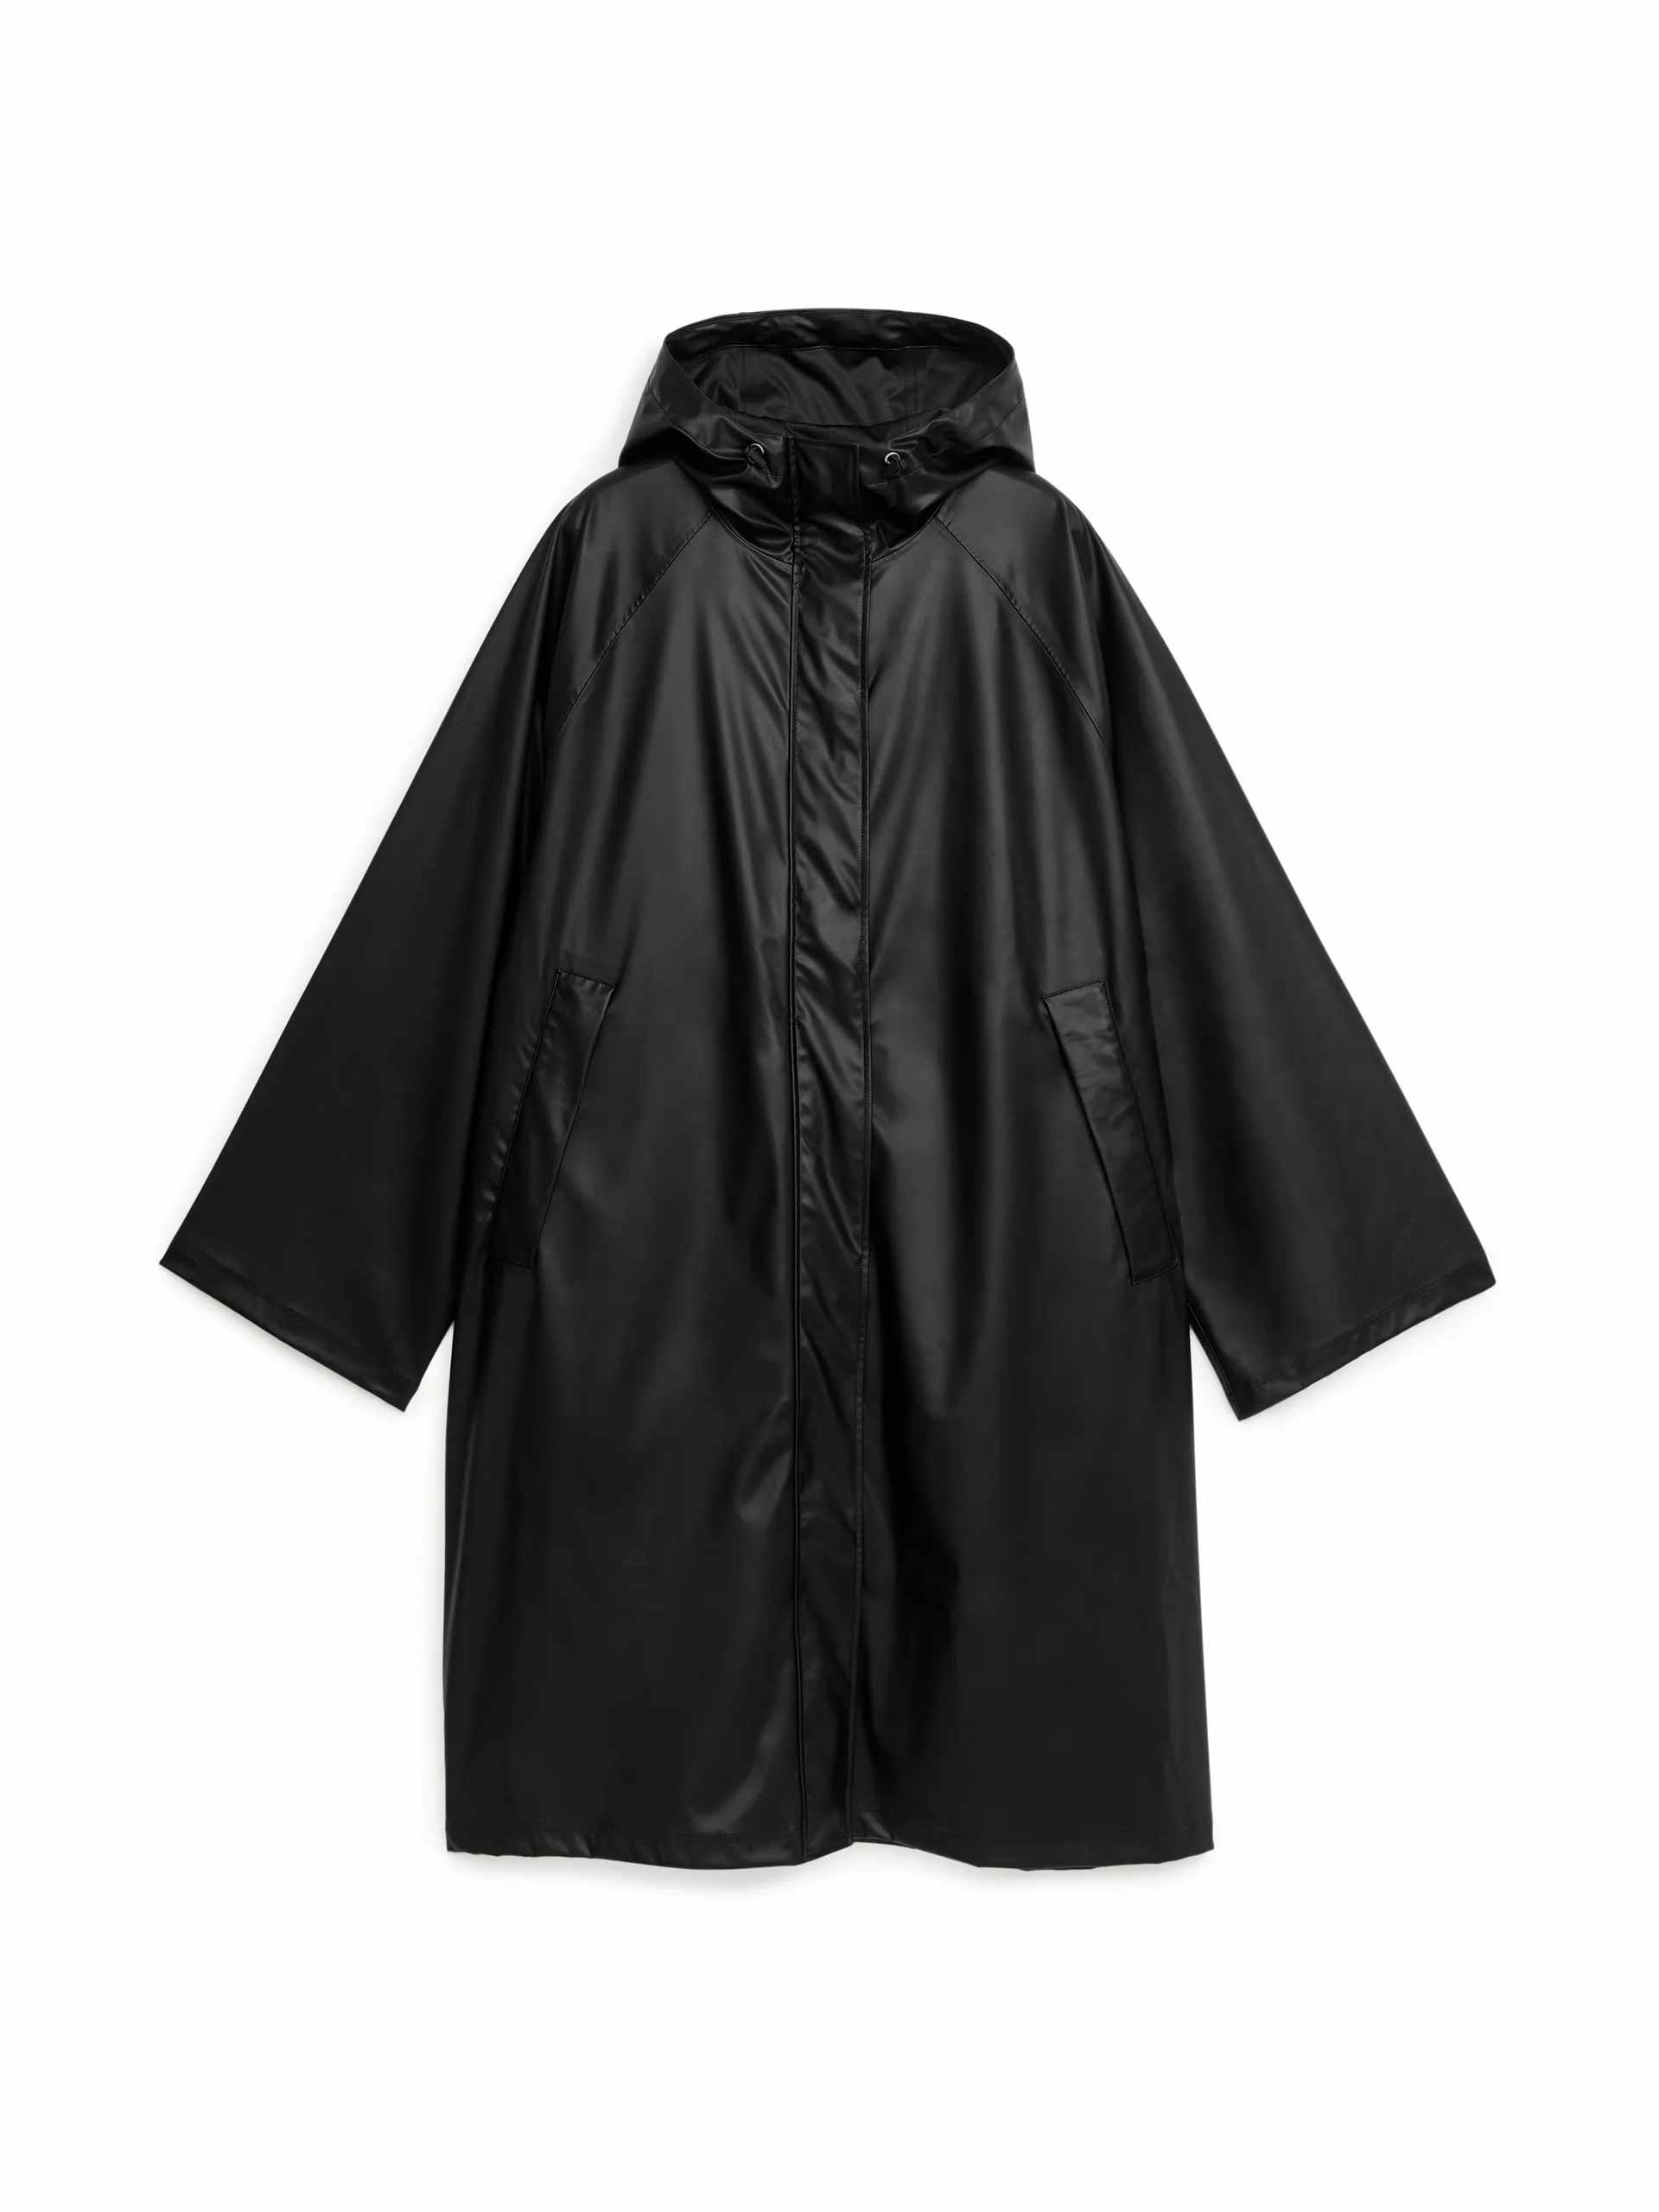 Black hooded rain jacket